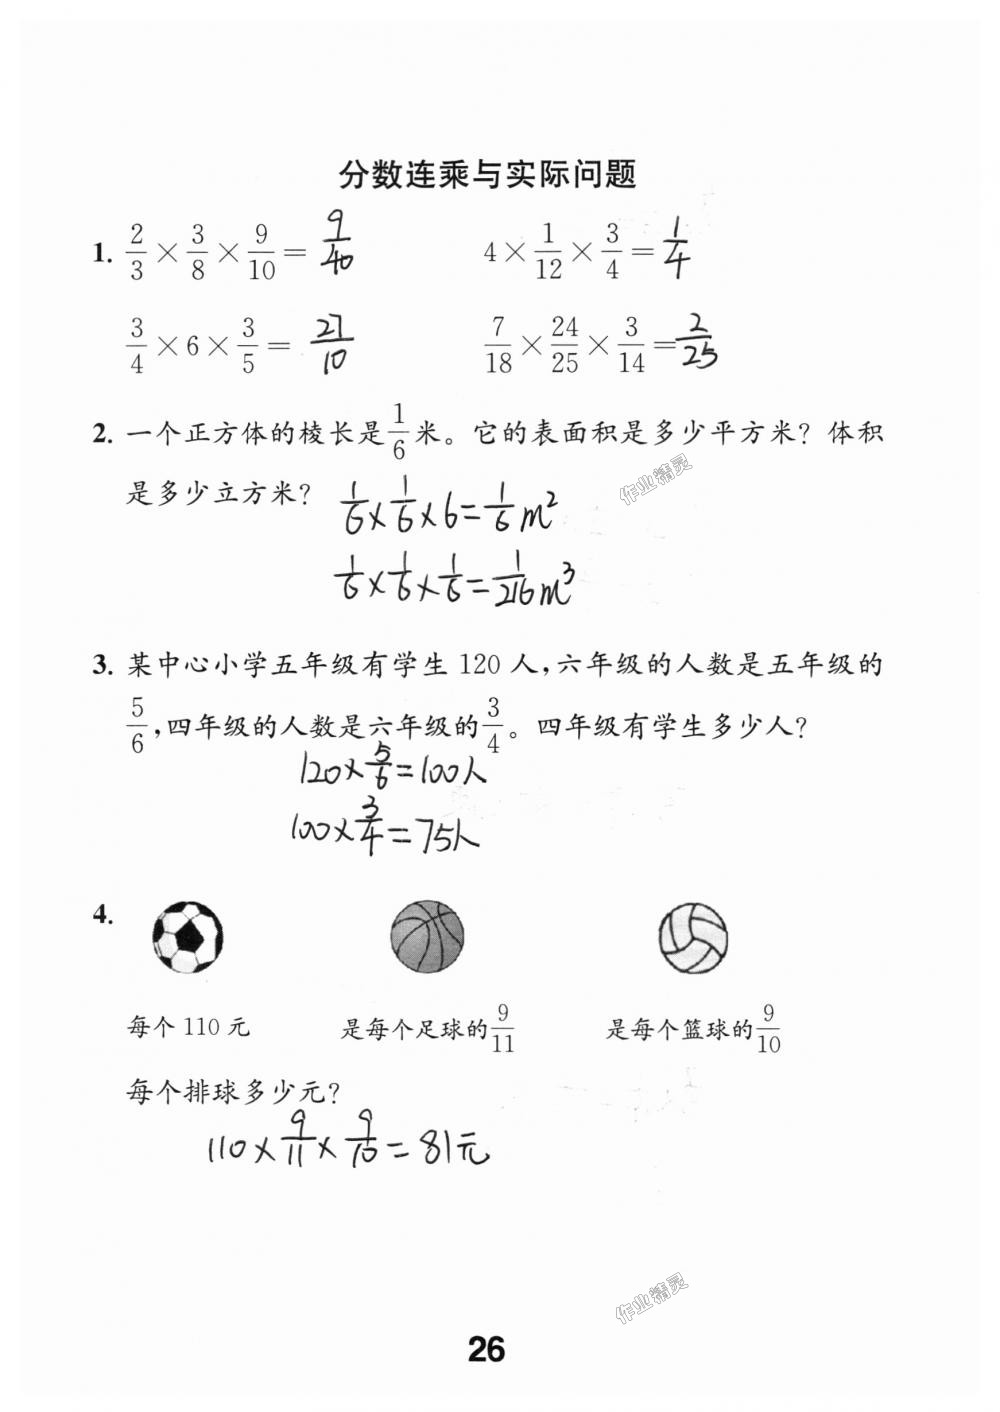 2018年数学补充习题六年级上册苏教版江苏凤凰教育出版社 第26页